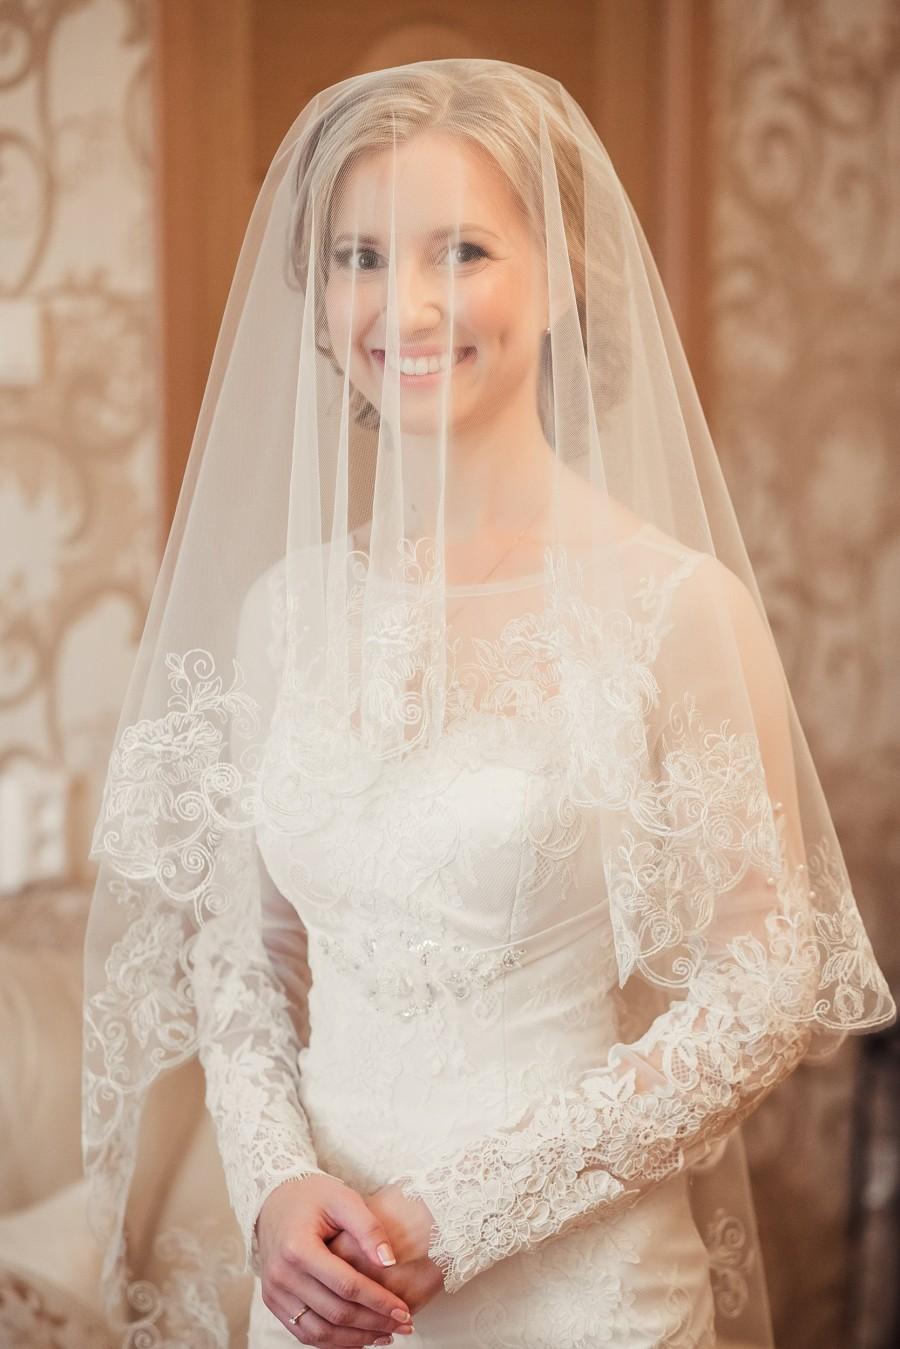 زفاف - Wedding veil with flowers, 2 tier veil with embroidery, Lace veil with comb, Long veil, Fingertip veil, Chapel veil, Cathedral veil